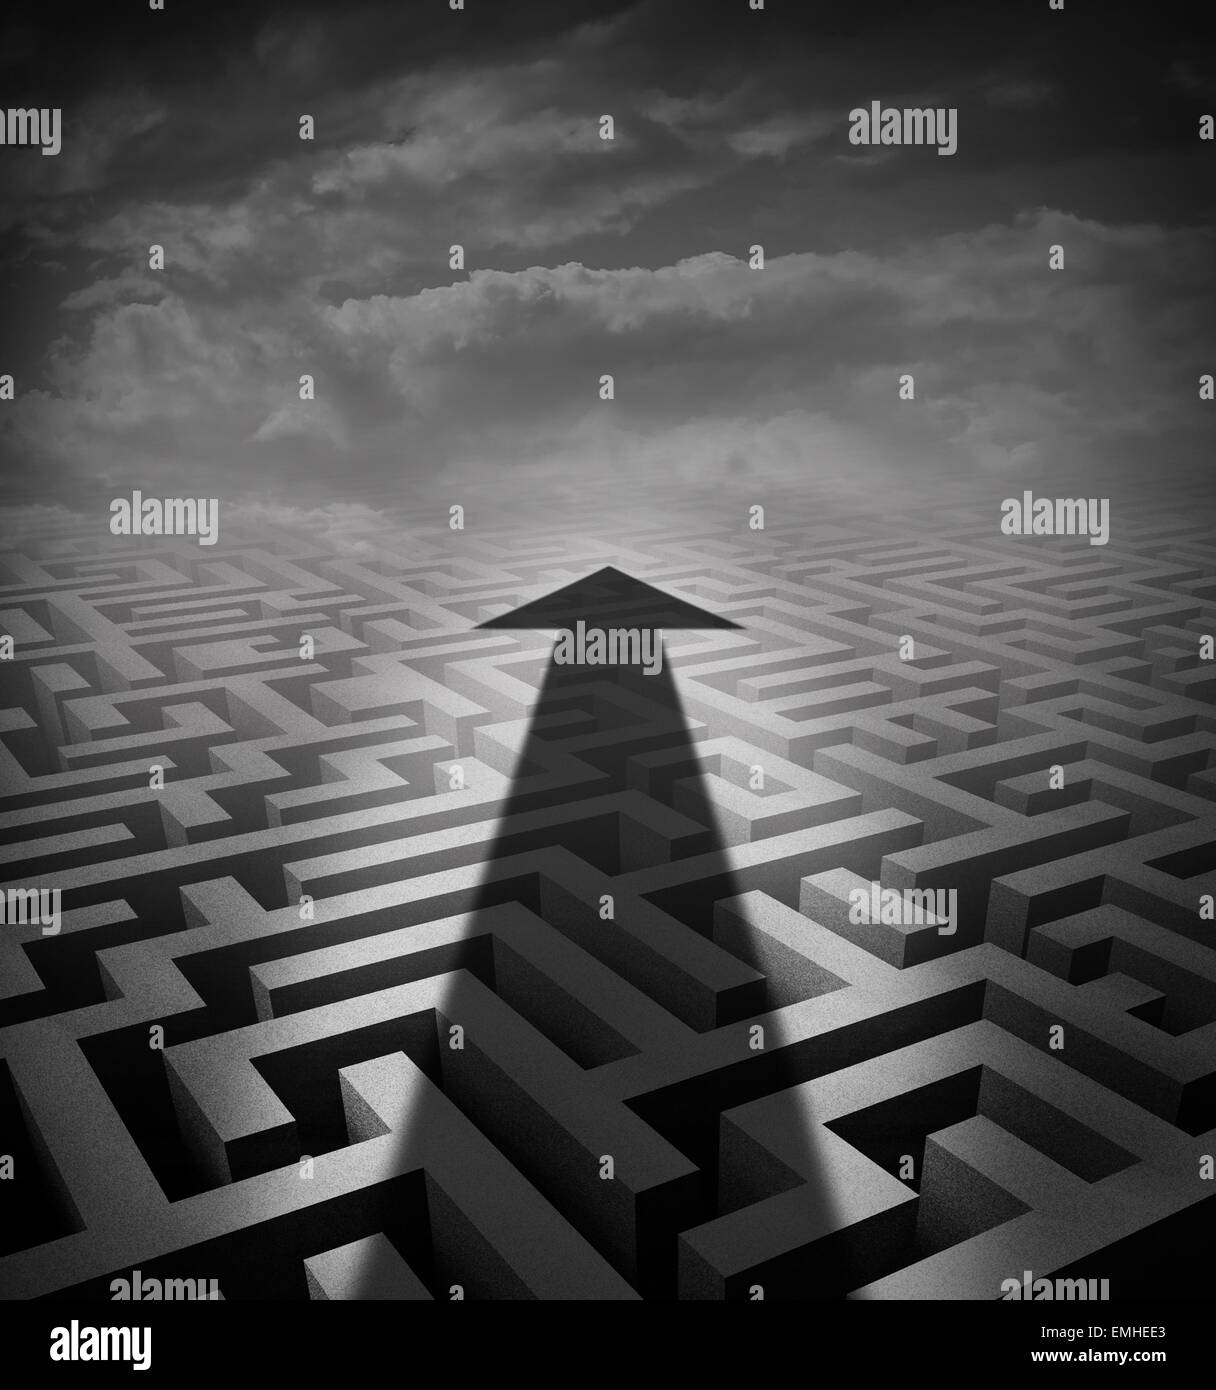 Pfeil-Labyrinth-Business-Konzept als eine Besetzung Schatten quer durch eine drei dimensionale Labyrinth als einen Erfolgsgrad Metapher und Lösung für die Suche nach einer Innovatavie Art der Fortbewegung in einem schwierigen Problem. Stockfoto